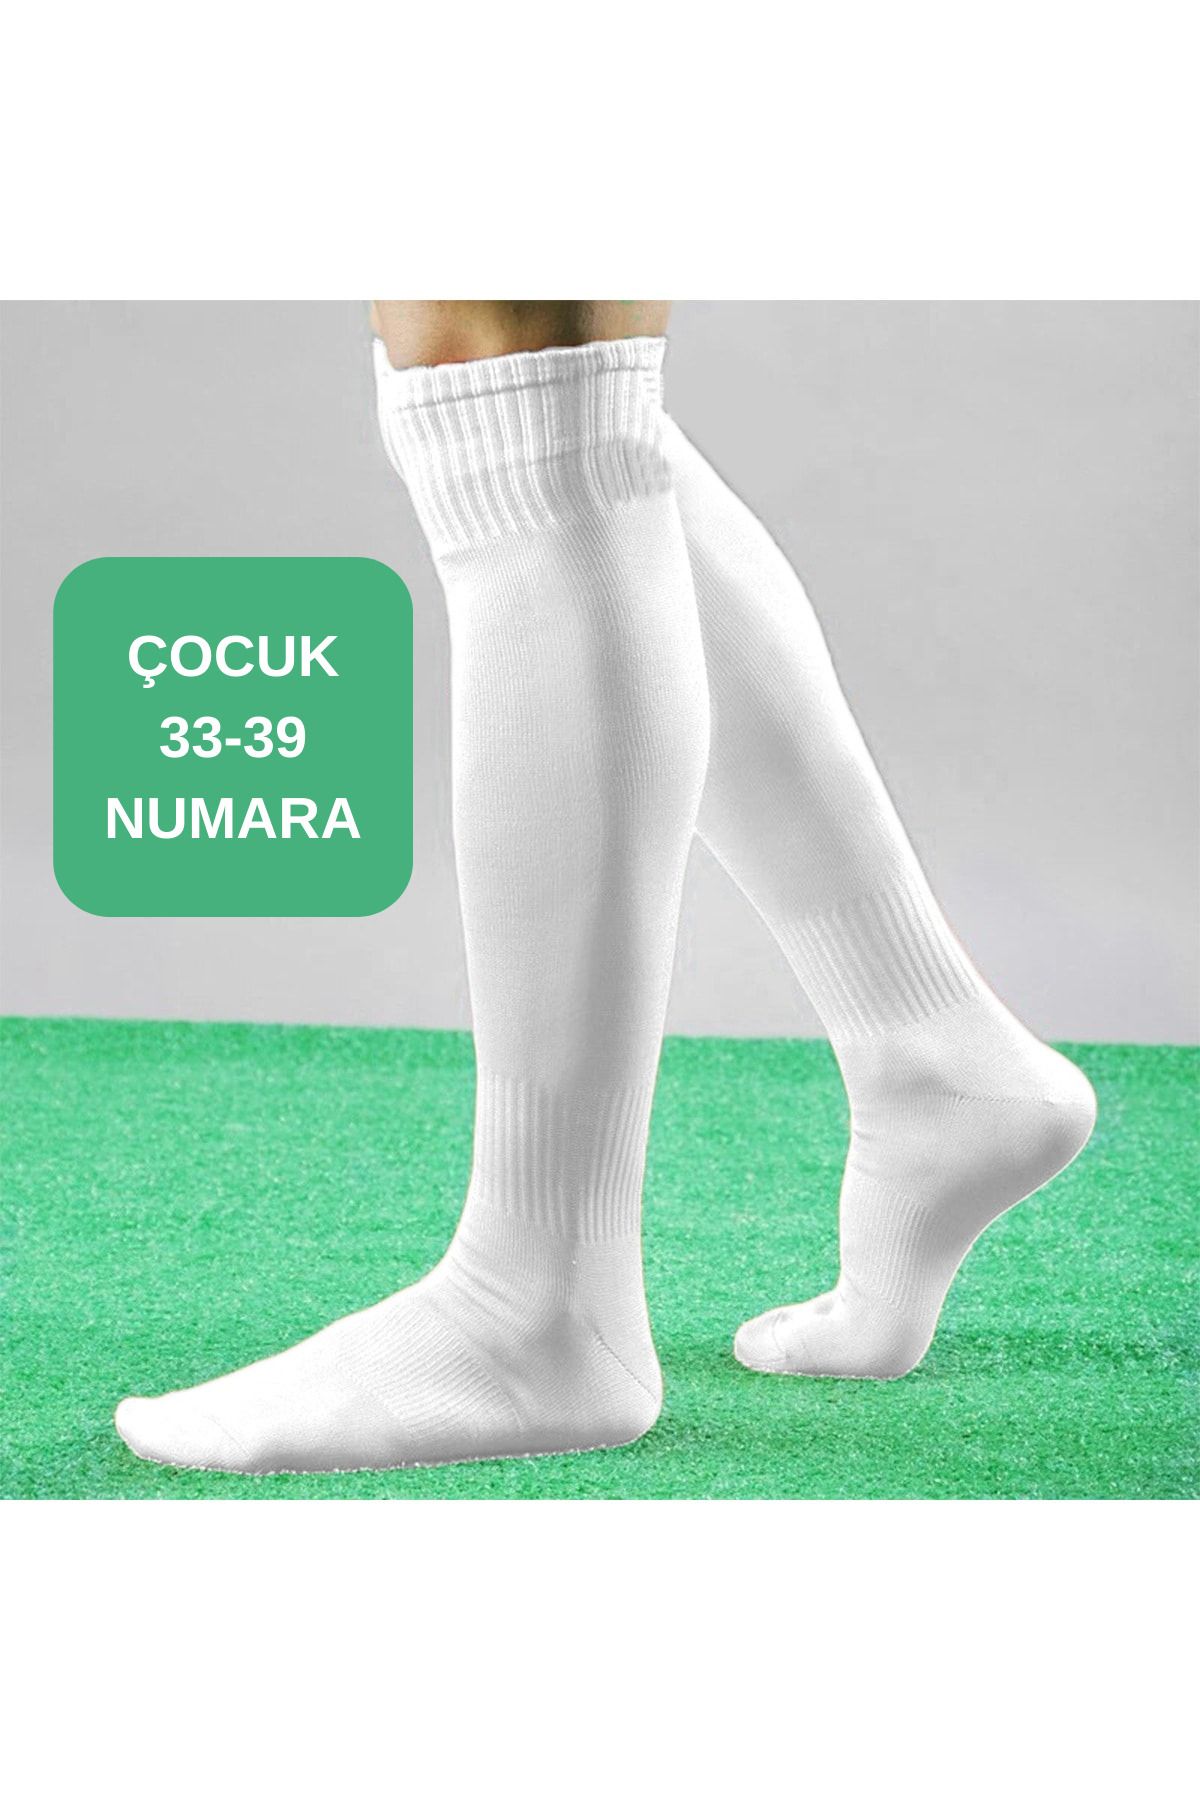 GAZELMANYA Çocuk Futbol Maç Çorabı 33-39 Futbol Tozluk Futbol Halısaha Çorabı Çocuk Konç Halı Saha Çorabı